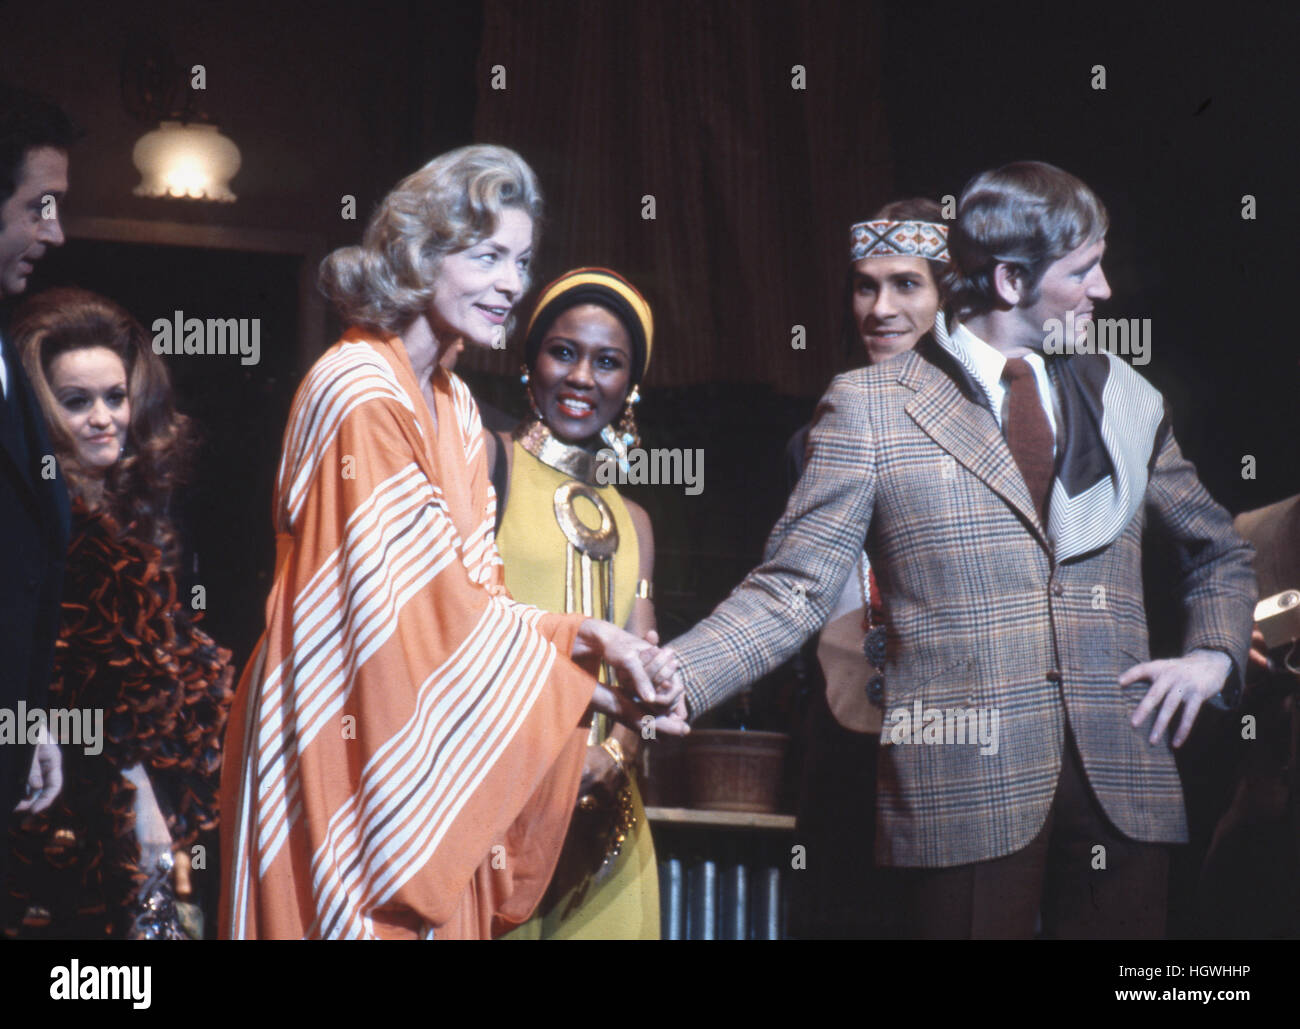 Len Cariou (lado derecho, vistiendo chaqueta) y Lauren Bacall, en el escenario en el musical de Broadway de 1970 aplausos. Foto de stock